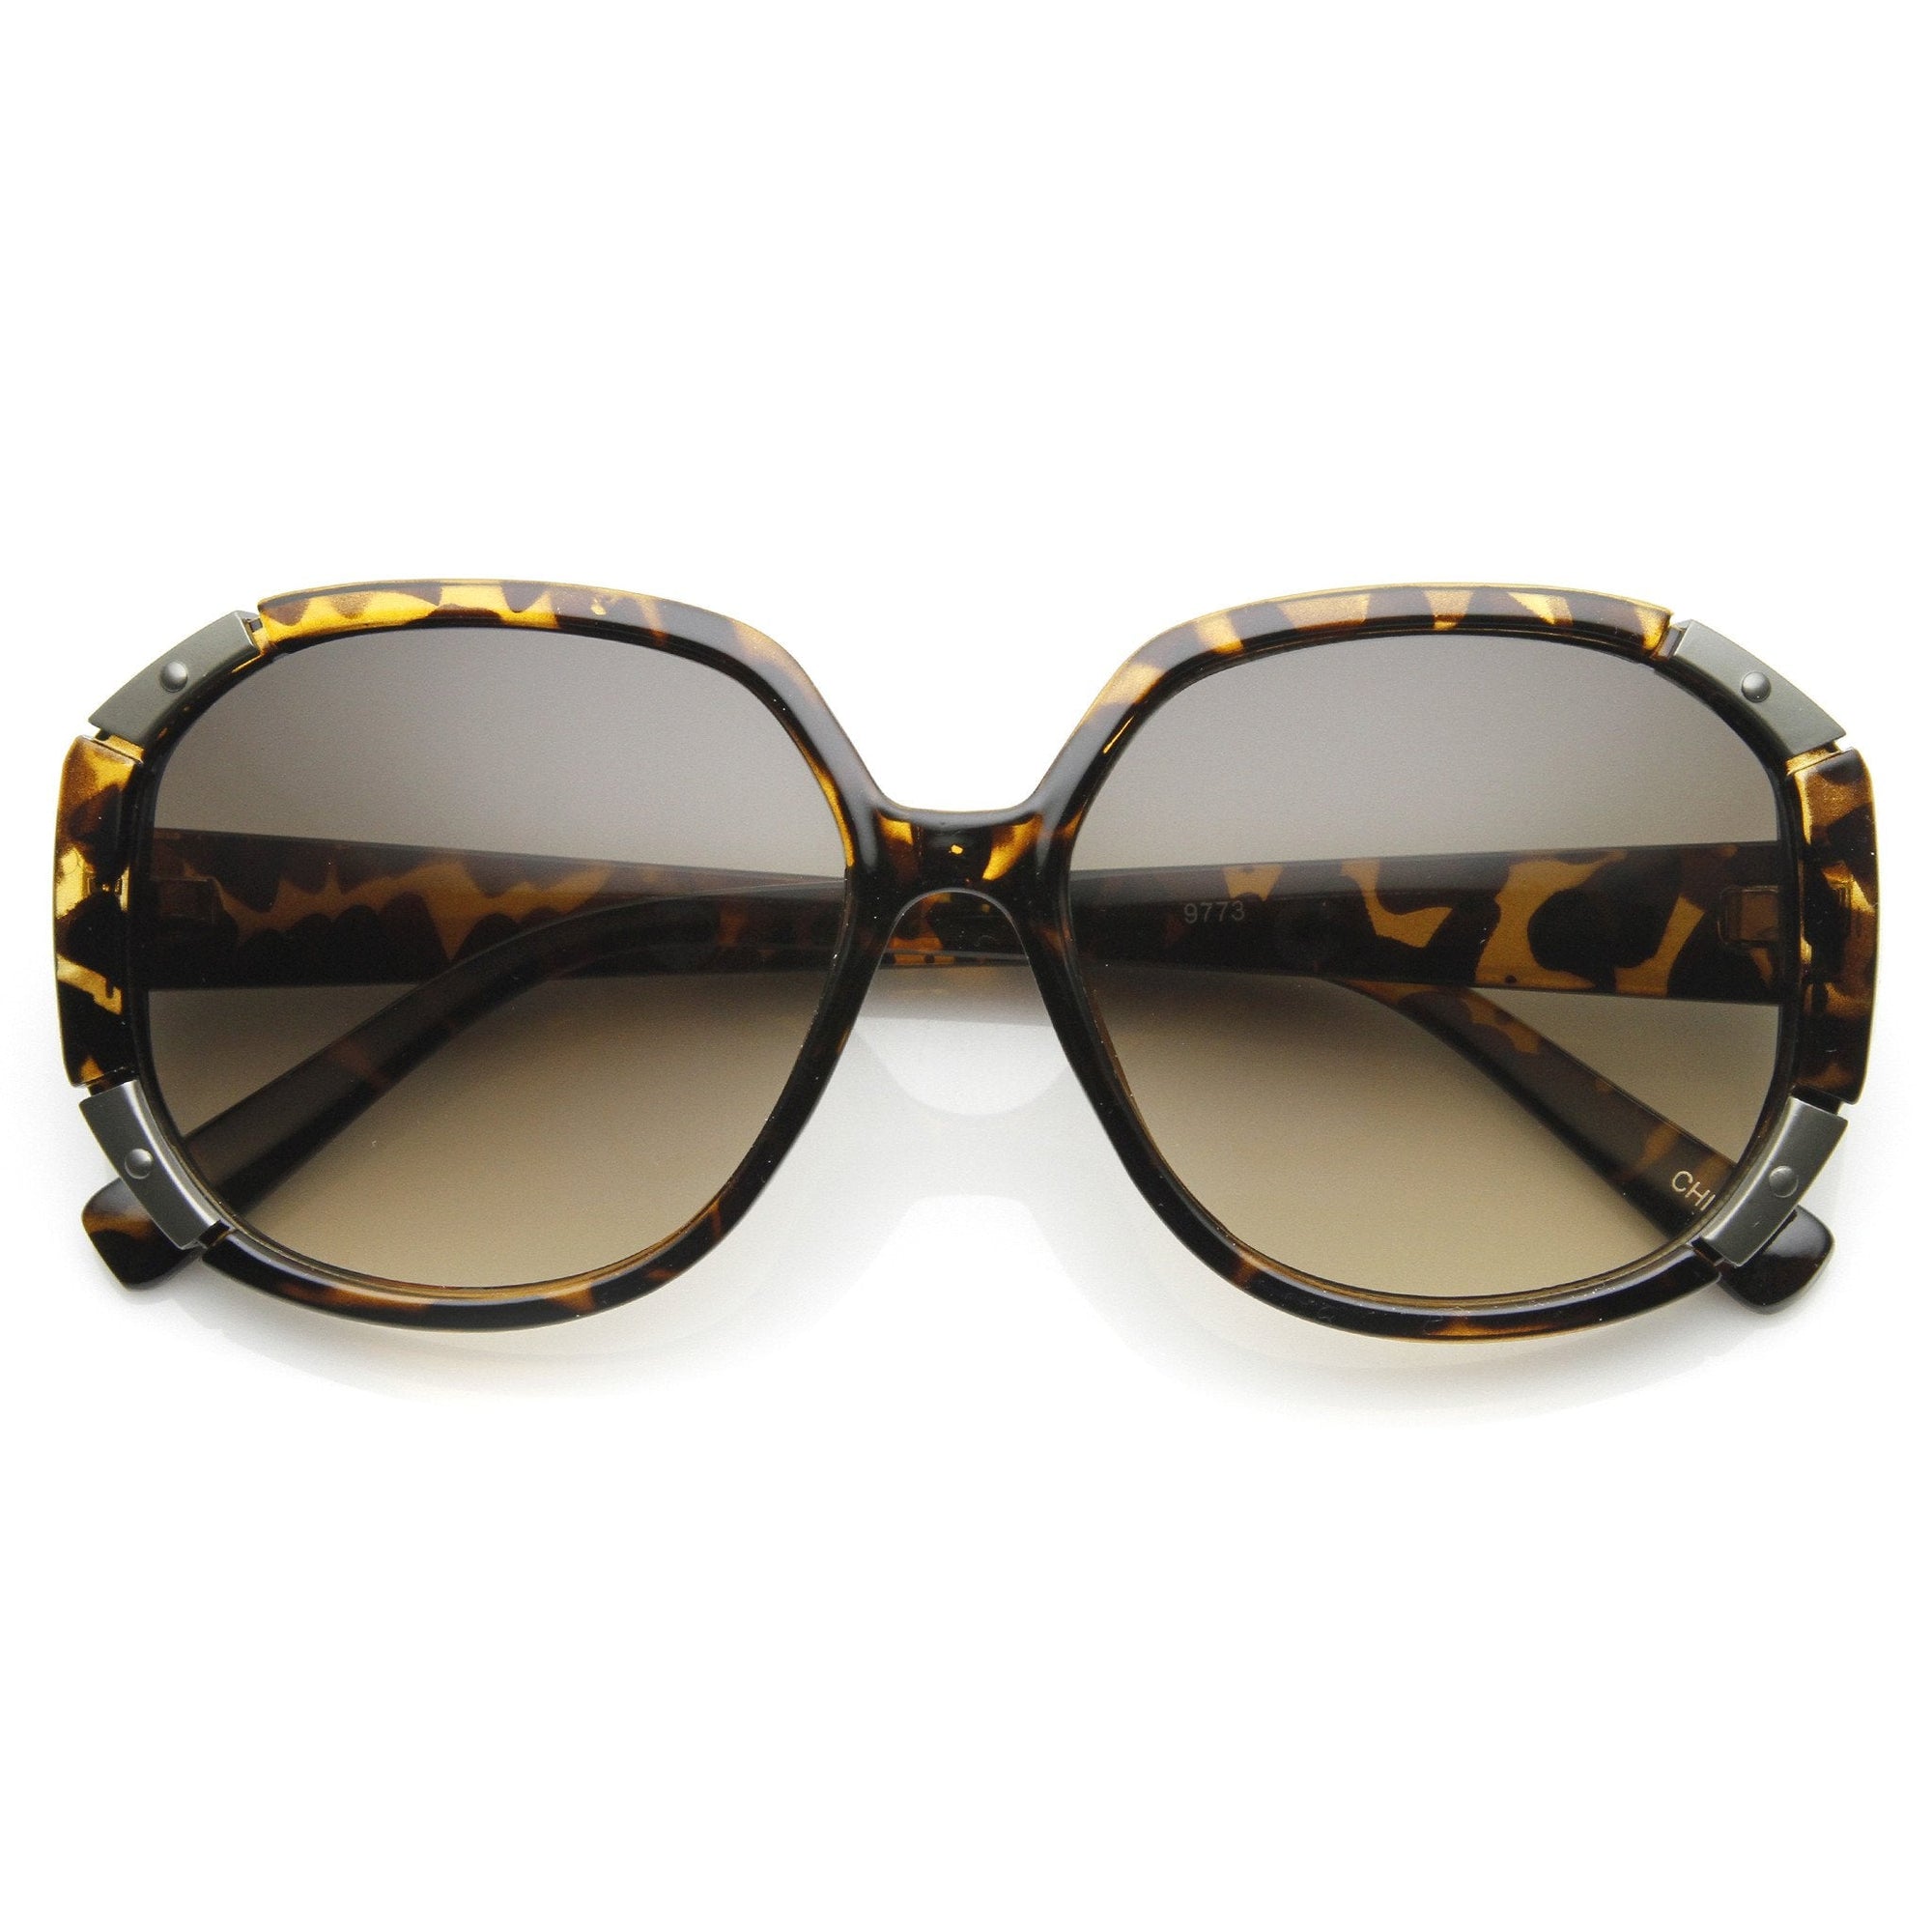 Women's Oversize Square Fashion Corner Accented Sunglasses 9135